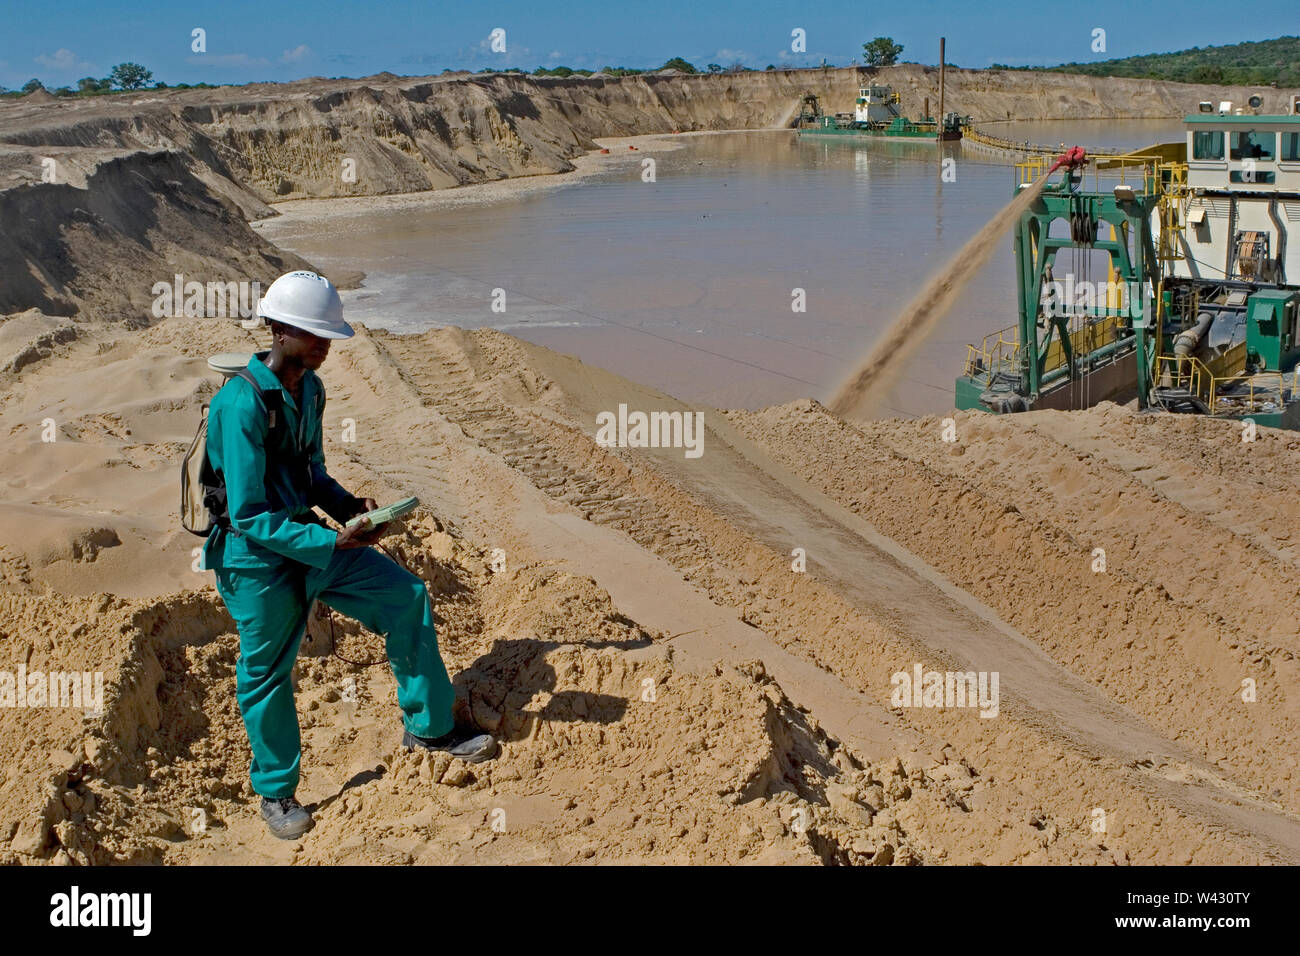 Gestion et transport des sables minéraux de titane sur le site minier. Exploitation minière à l'aide de dragues pompage de sable à partir d'étangs d'eau et d'arpenteur mesurant les hauteurs des dunes. Banque D'Images